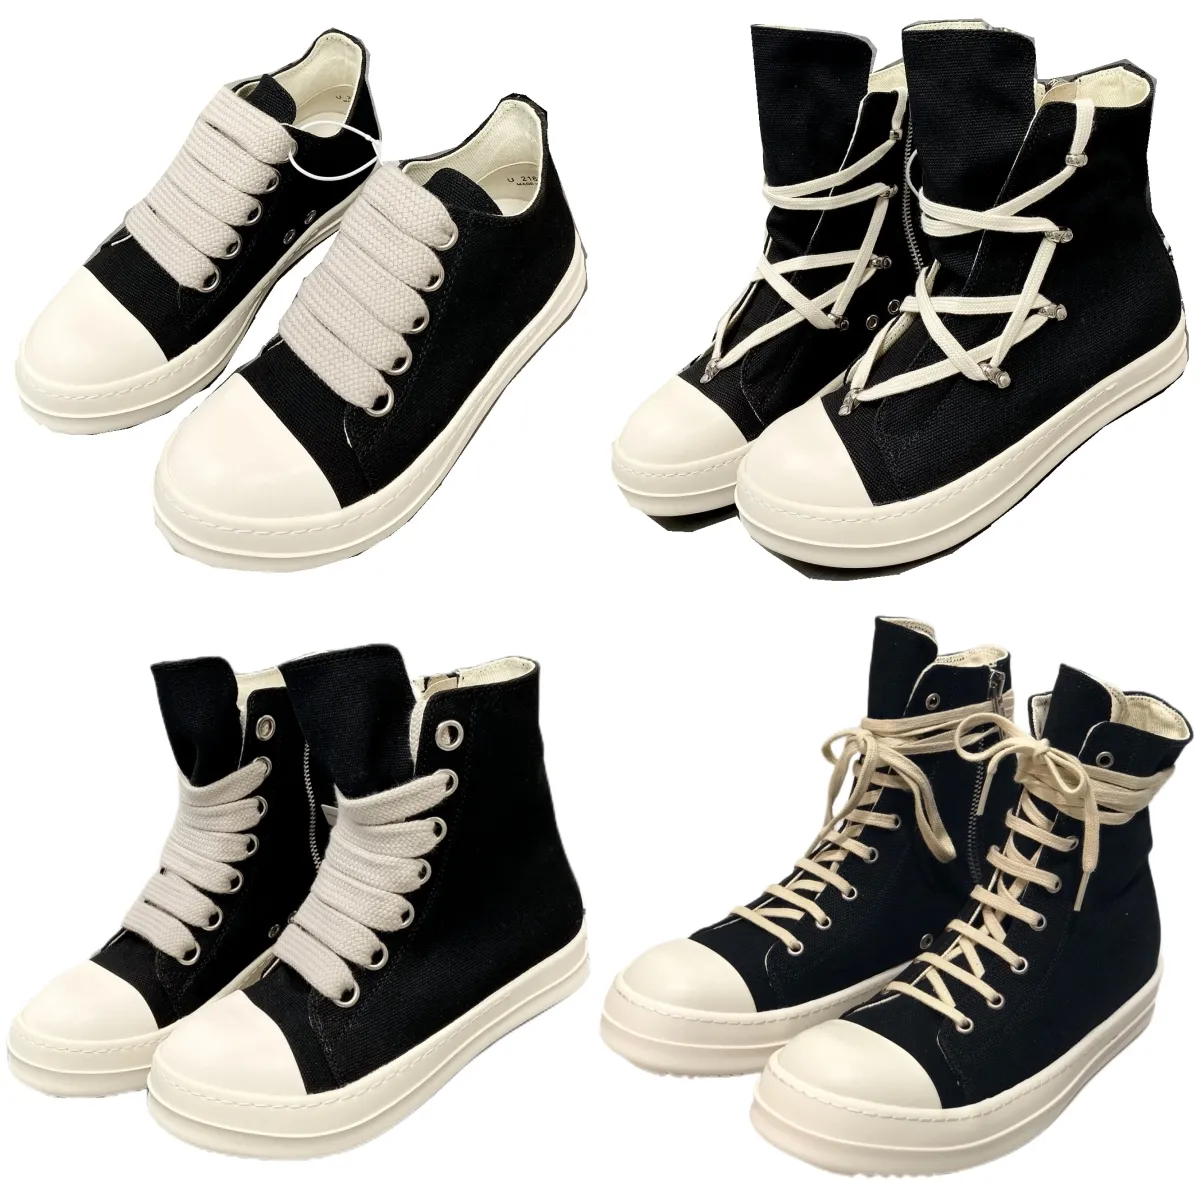 Bayan Açık Ayakkabı Erkek Siyah Spor Siyah Koşucu Erkekler Tasarımcı Tuval Ayakkabı Kabarık Nefes Alabilir Orijinal Deri Konforlu Kaykay Ayakkabı Dil boyutu 35-47